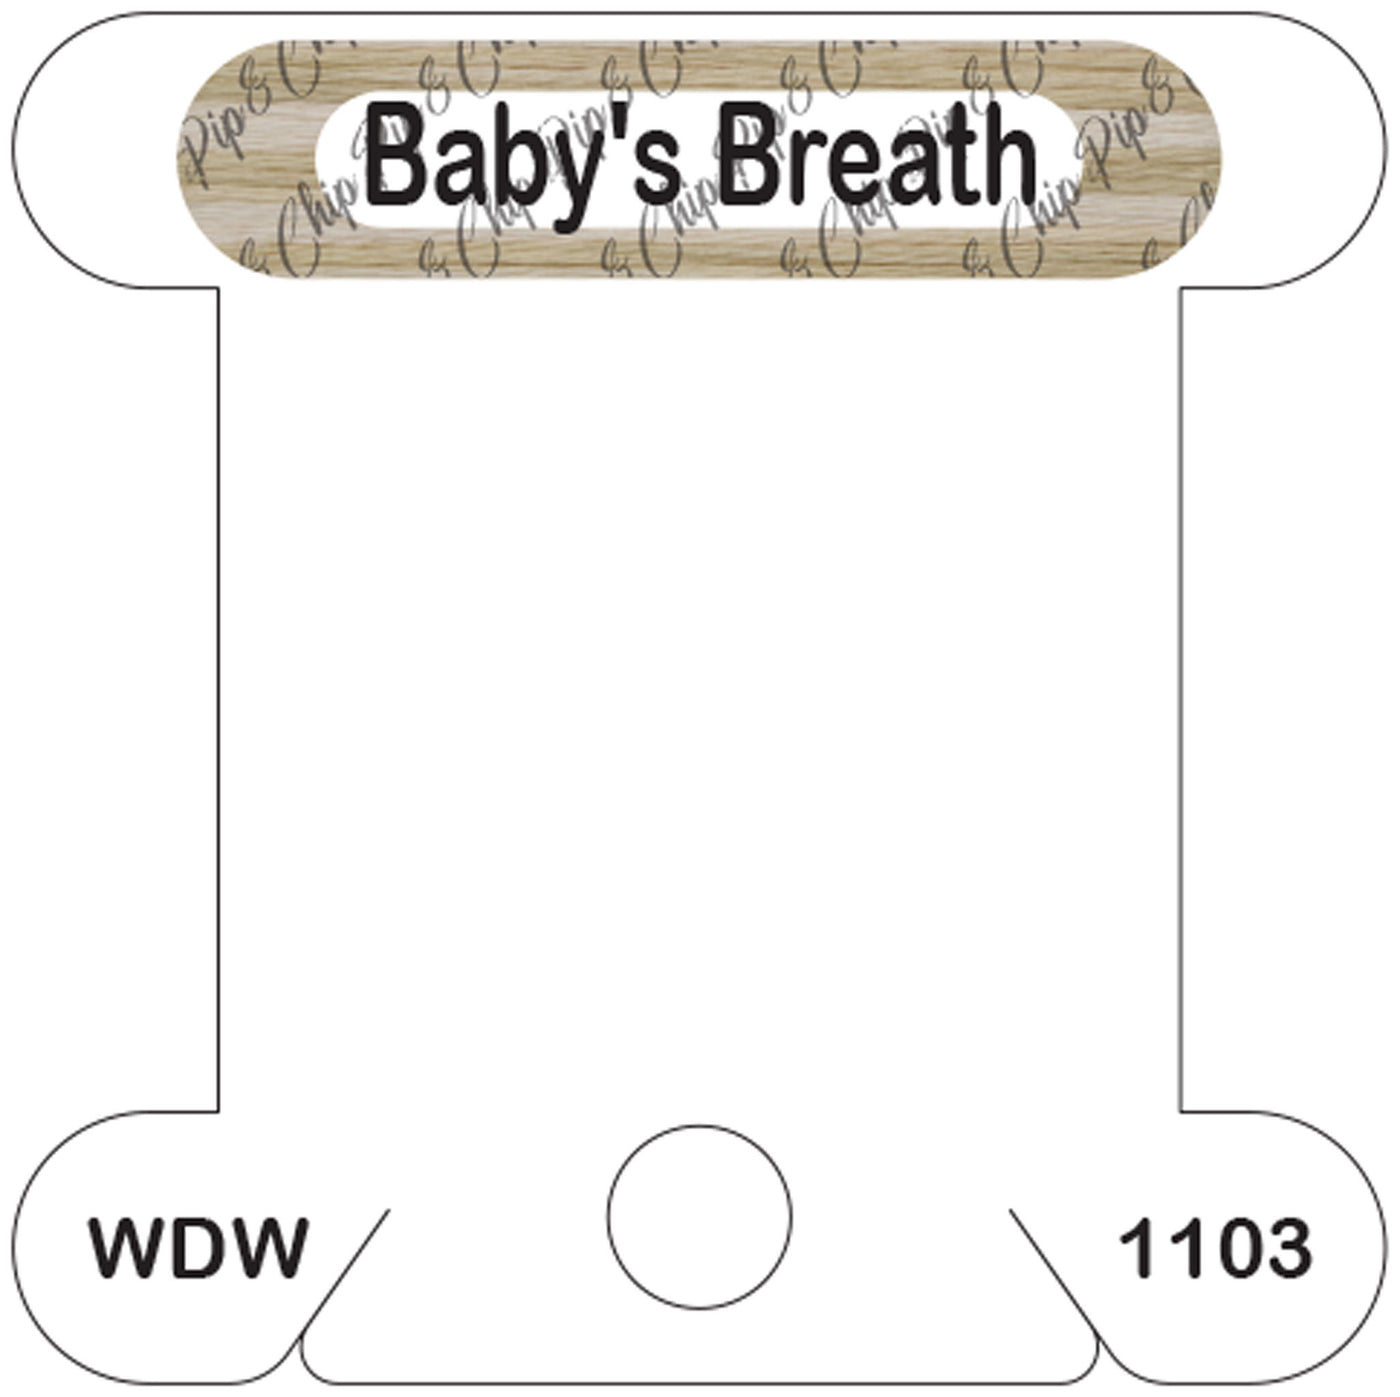 WDW Baby's Breath acrylic bobbin